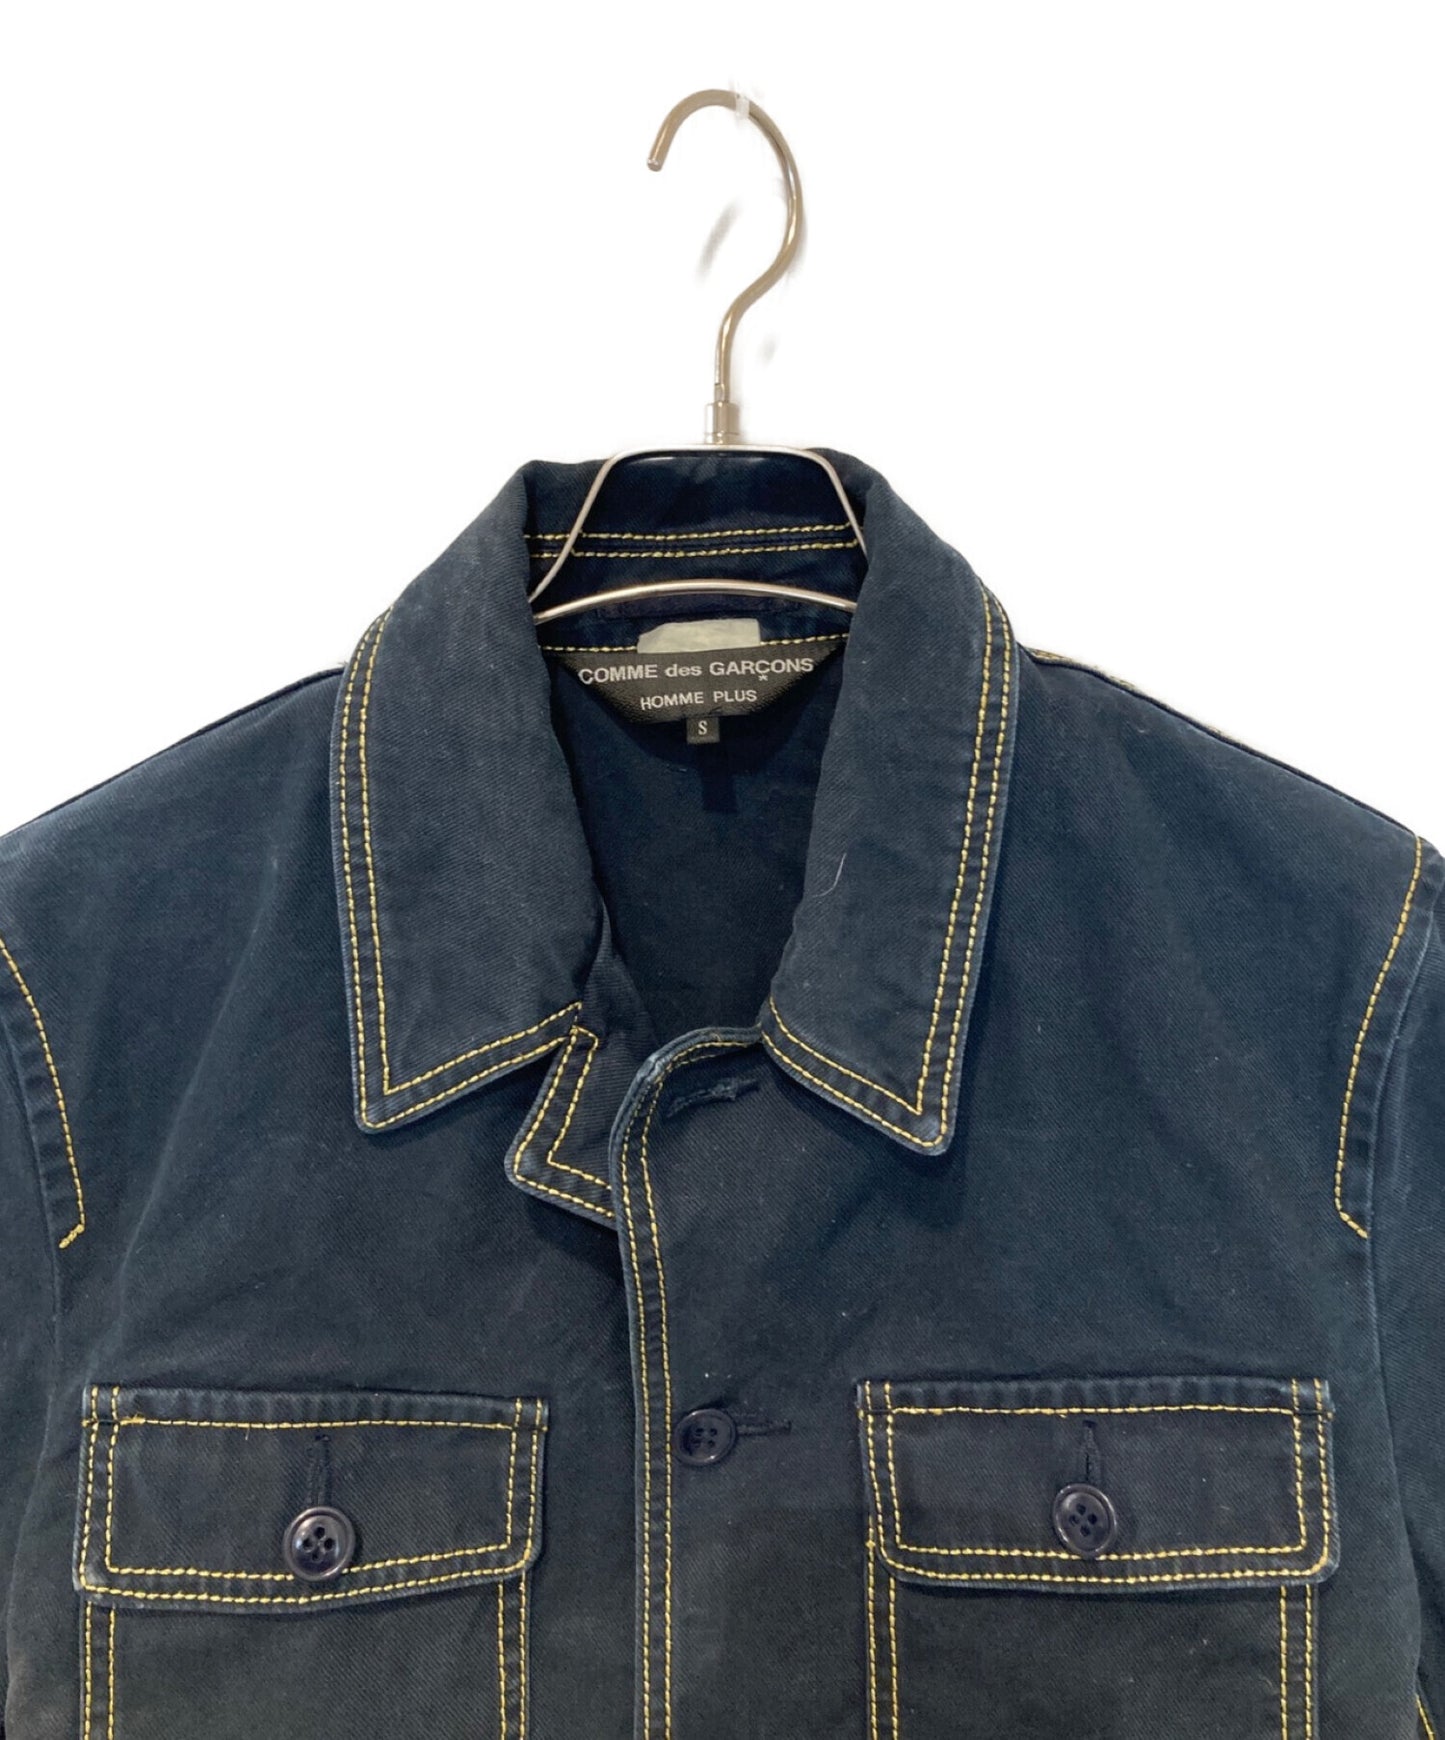 COMME des GARCONS HOMME PLUS OLD] Stitched Jacket PS-J087